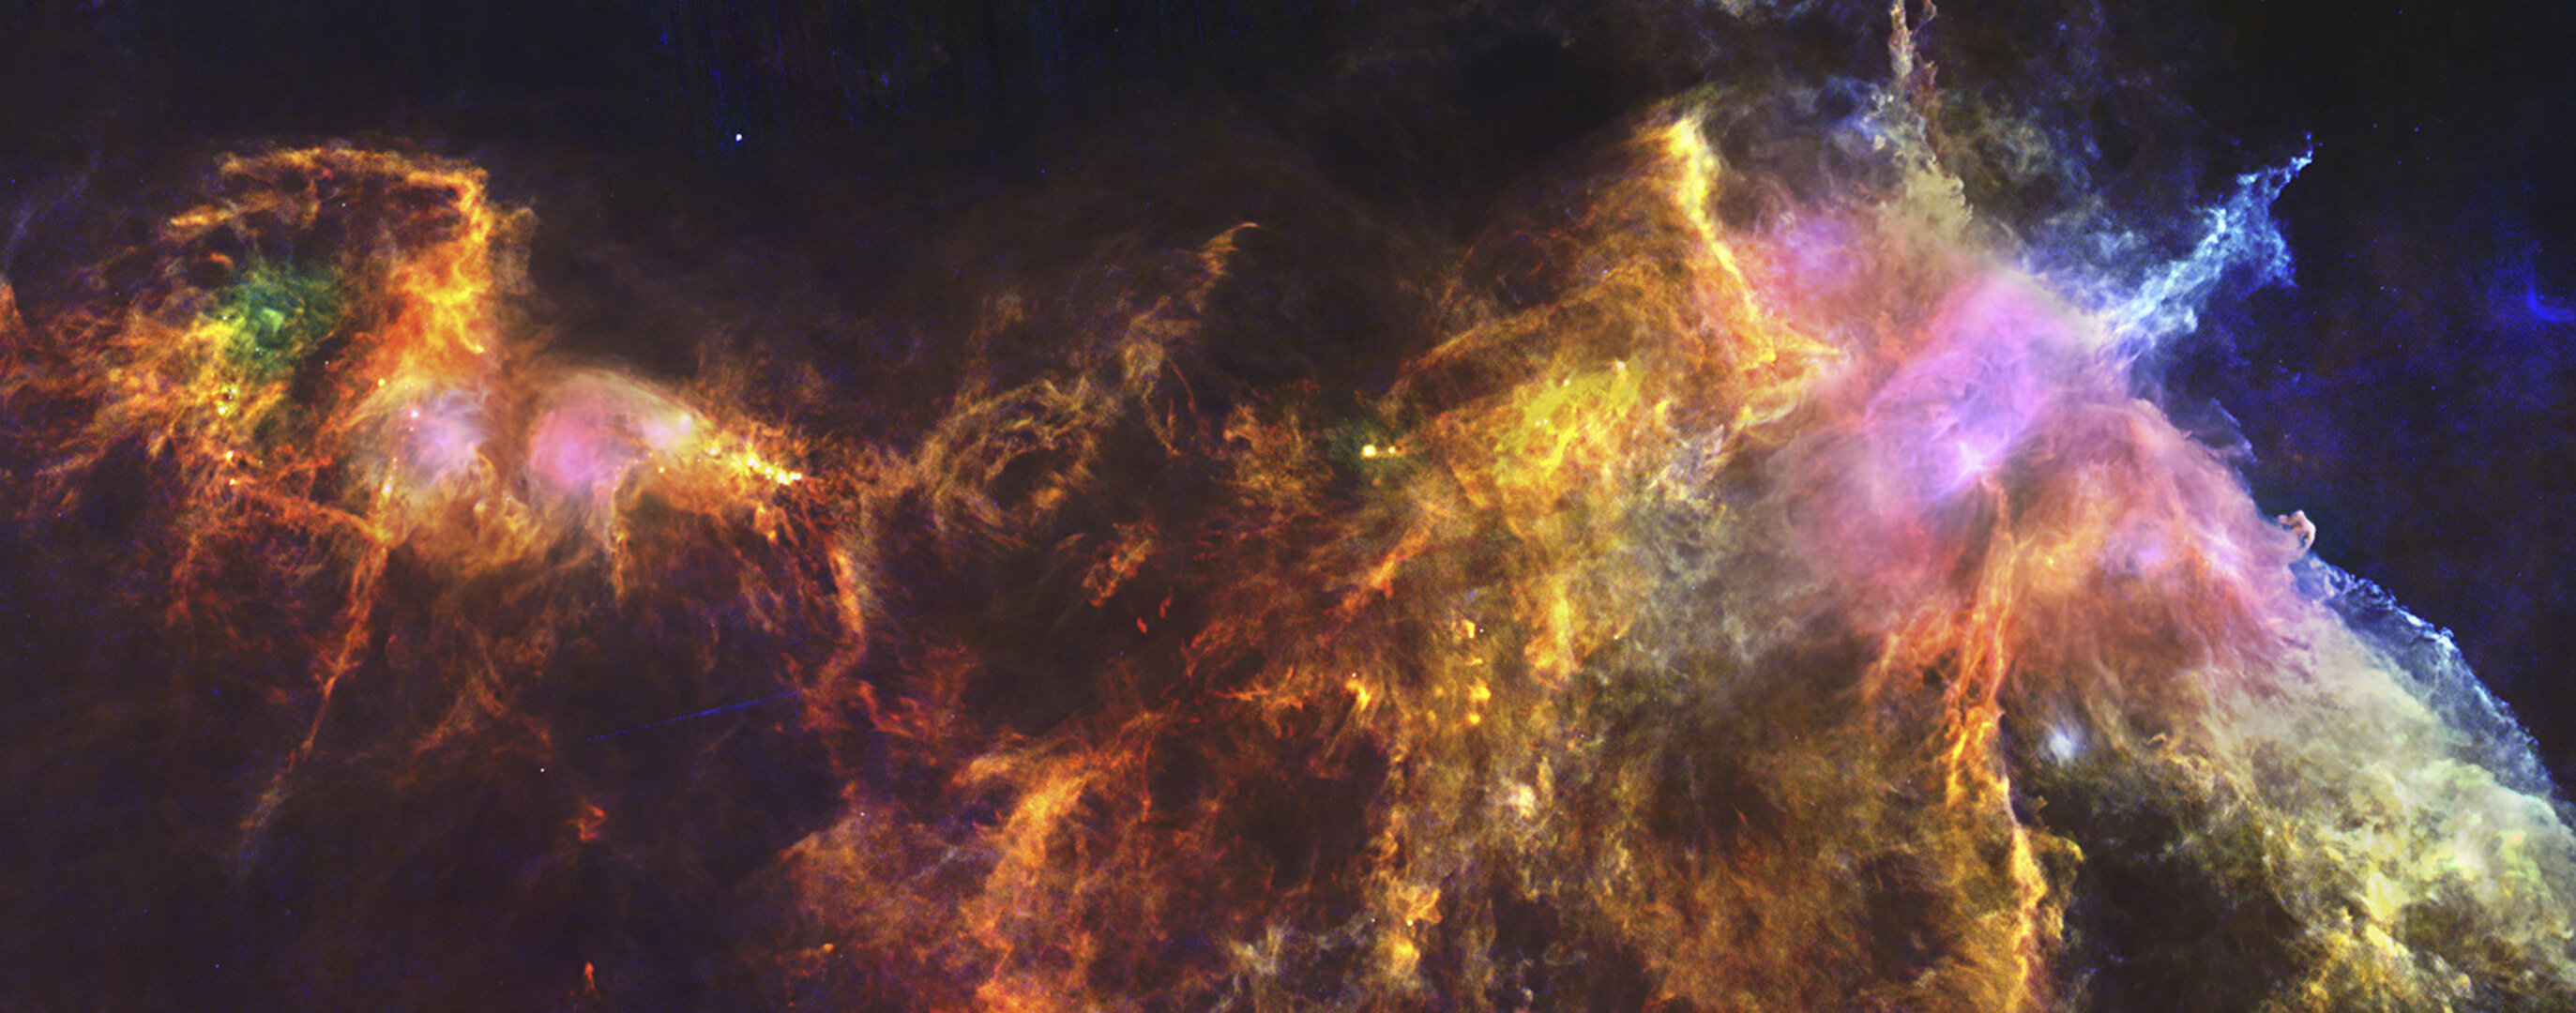 La Nebulosa Cabeza de Caballo y su entorno, vista por Herschel